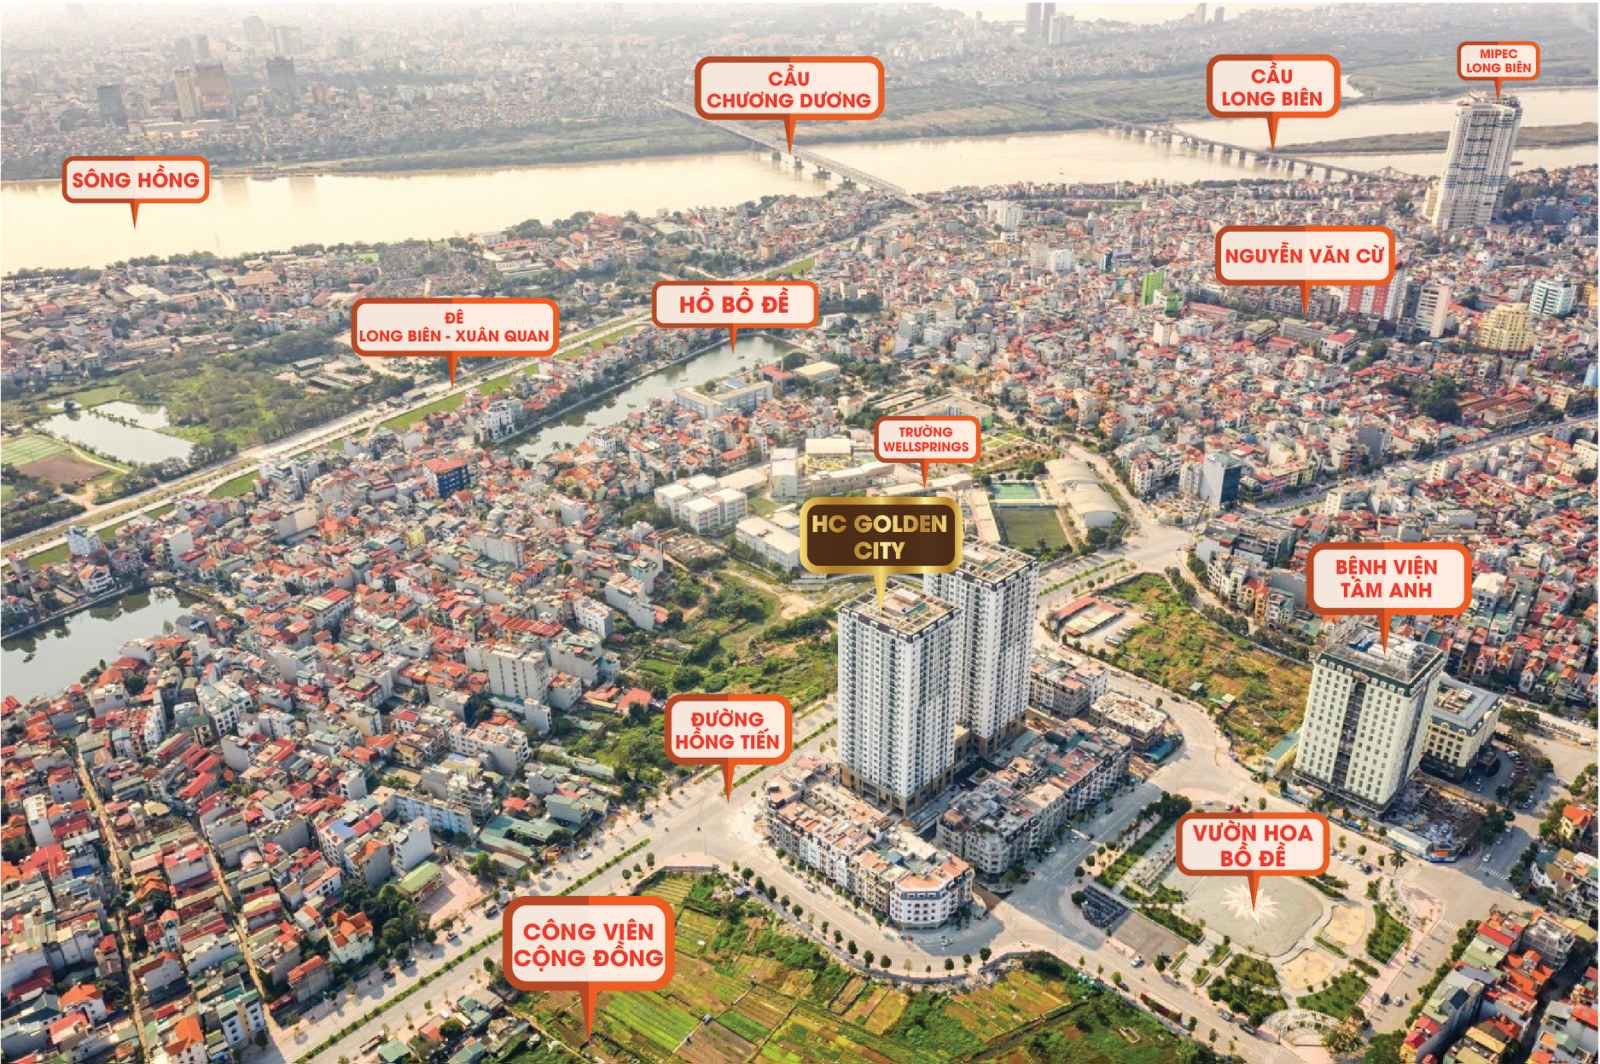 Bán căn hộ chung cư cao cấp nhất Long Biên, 2PN, 3PN, 4PN. Giá tổng từ 2,5 tỷ, có vay HTLS 0%